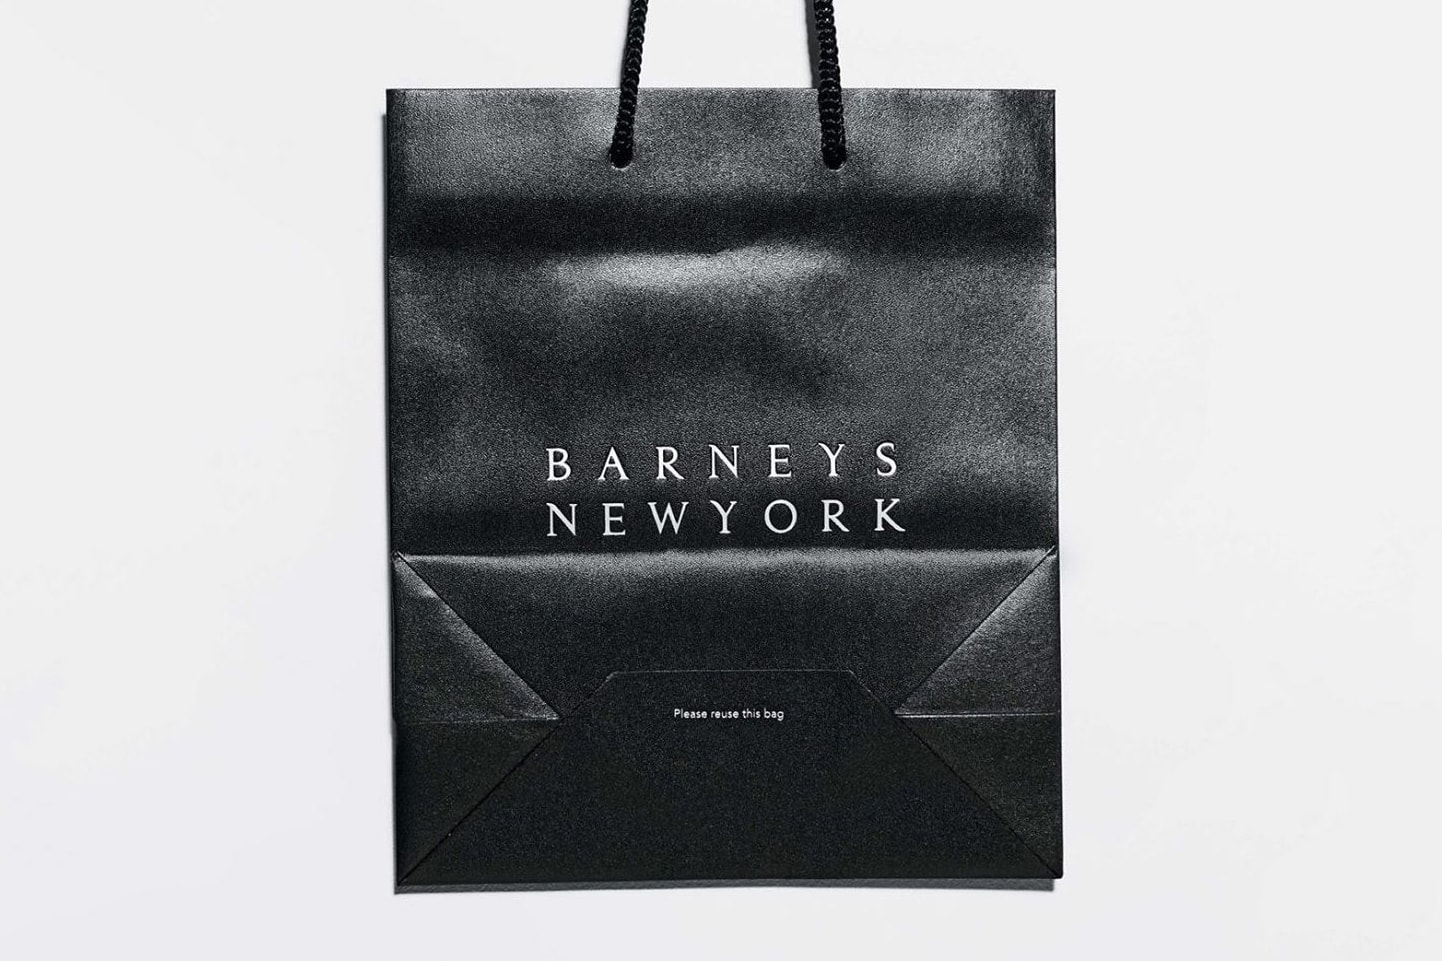 美國奢侈品百貨 Barneys New York 正式申請破産保護